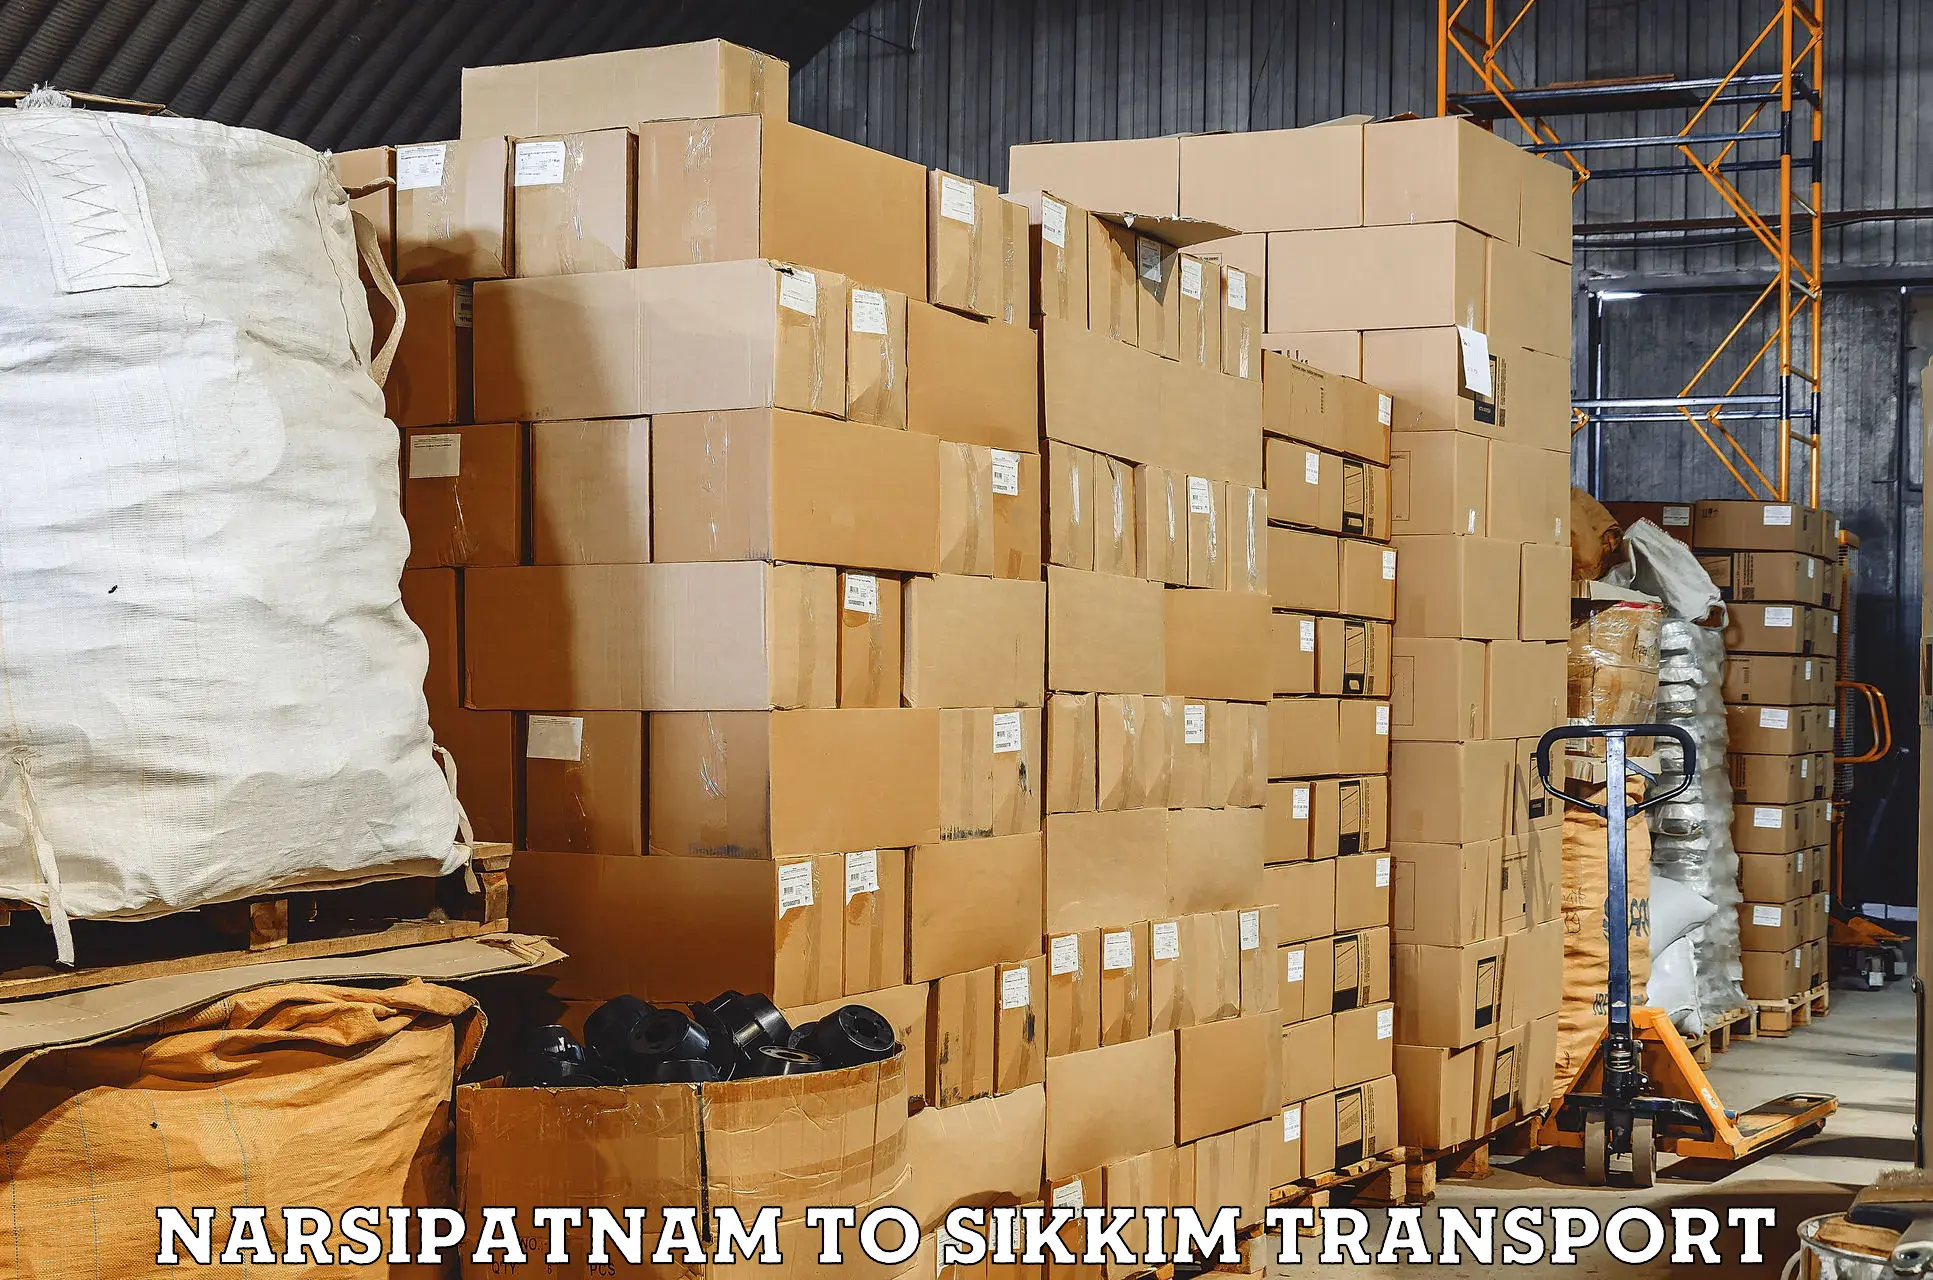 Vehicle transport services Narsipatnam to Mangan